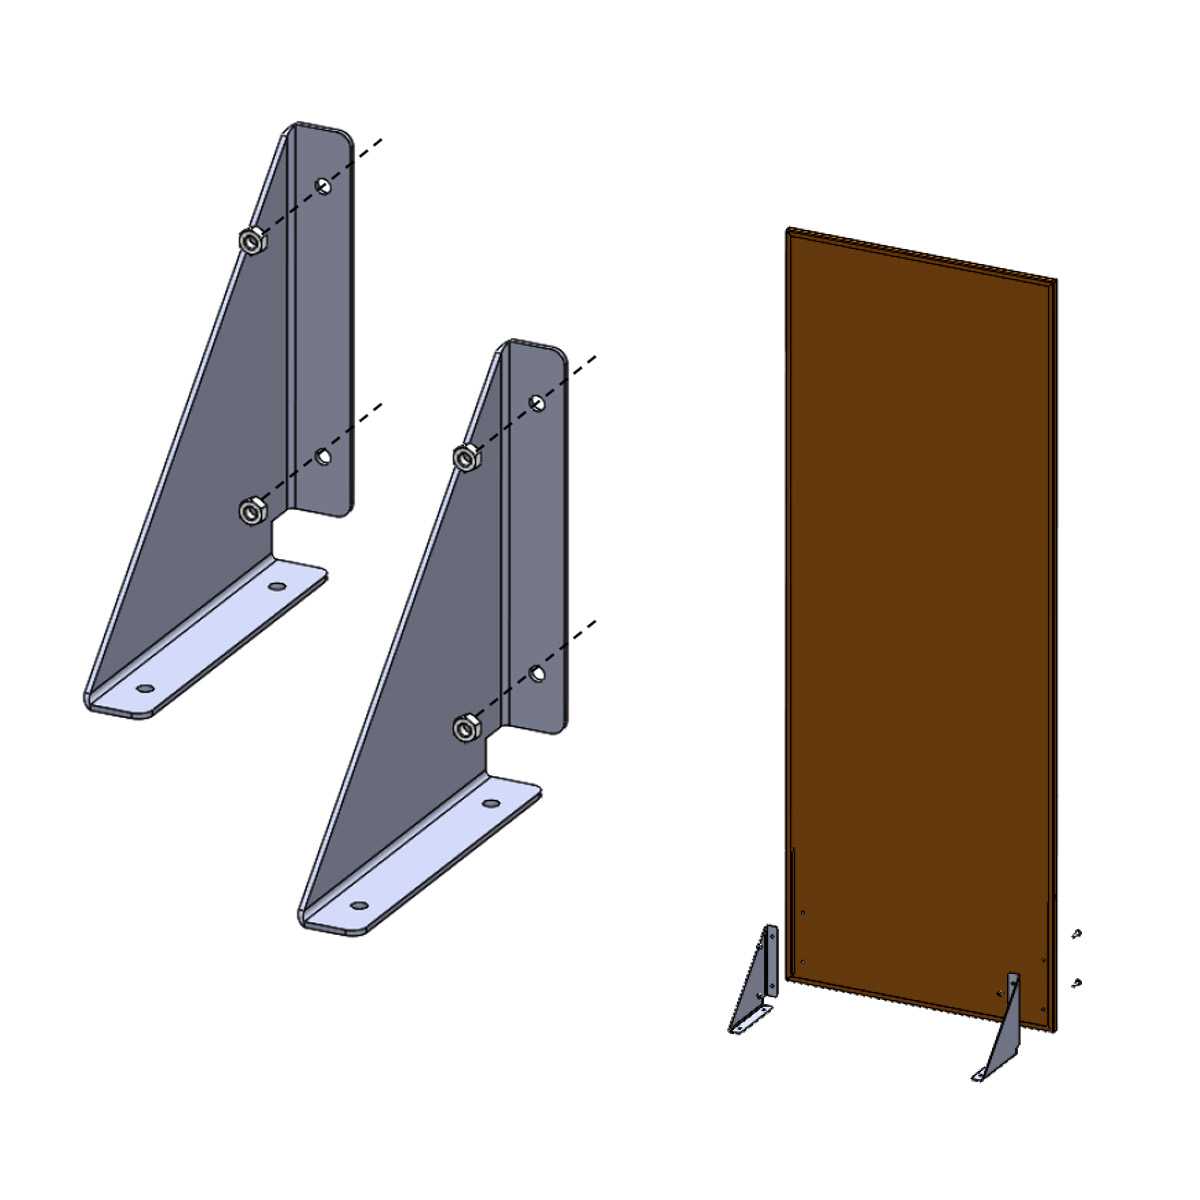 2 équerres de fixation pour panneau en métal - Sol rigide